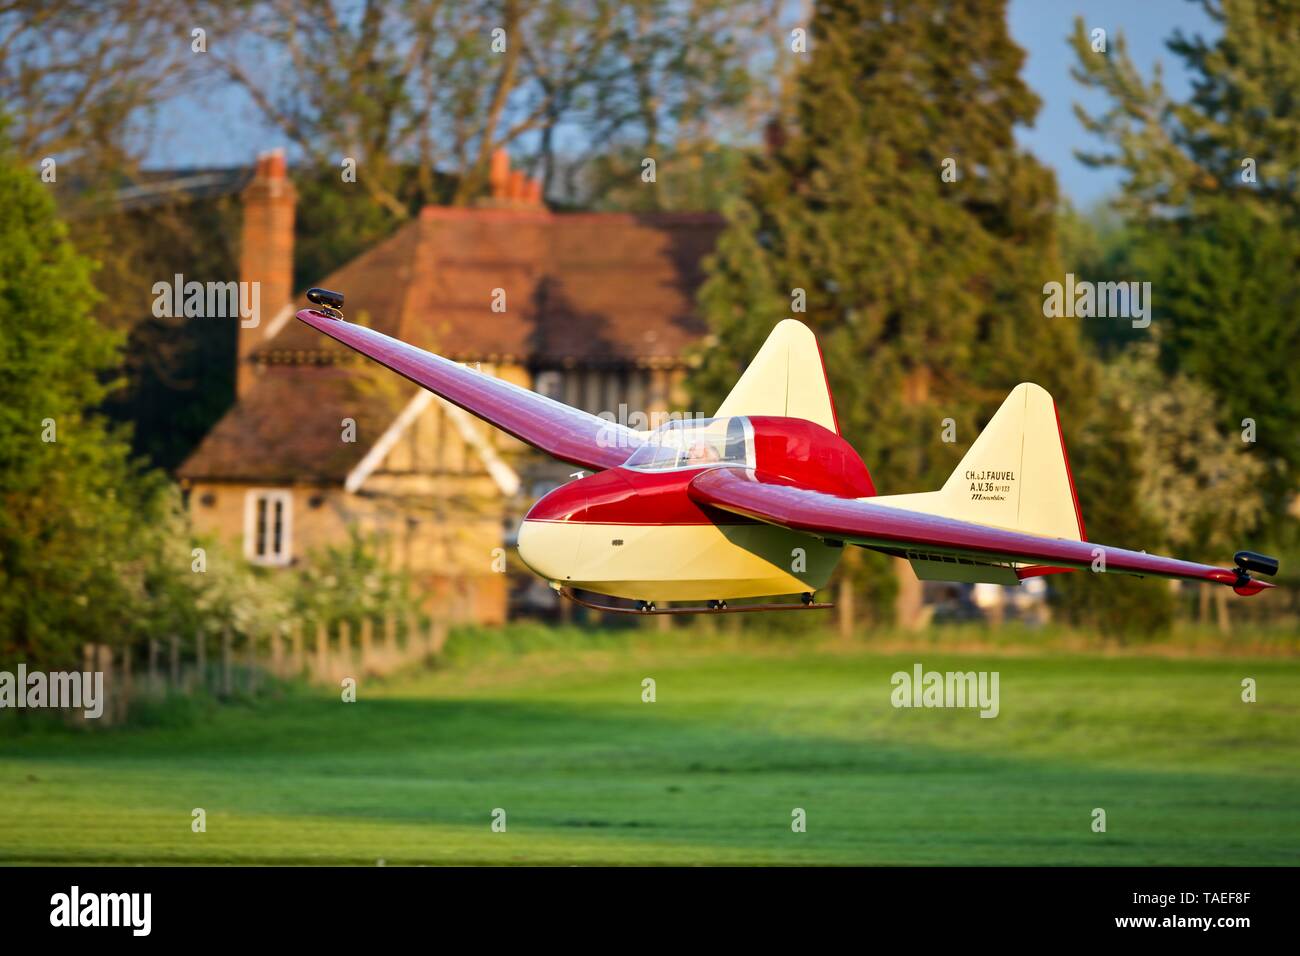 Fauvel AV.36 Glider Alla Shuttleworth airshow di sera il 18 maggio 2019 Foto Stock